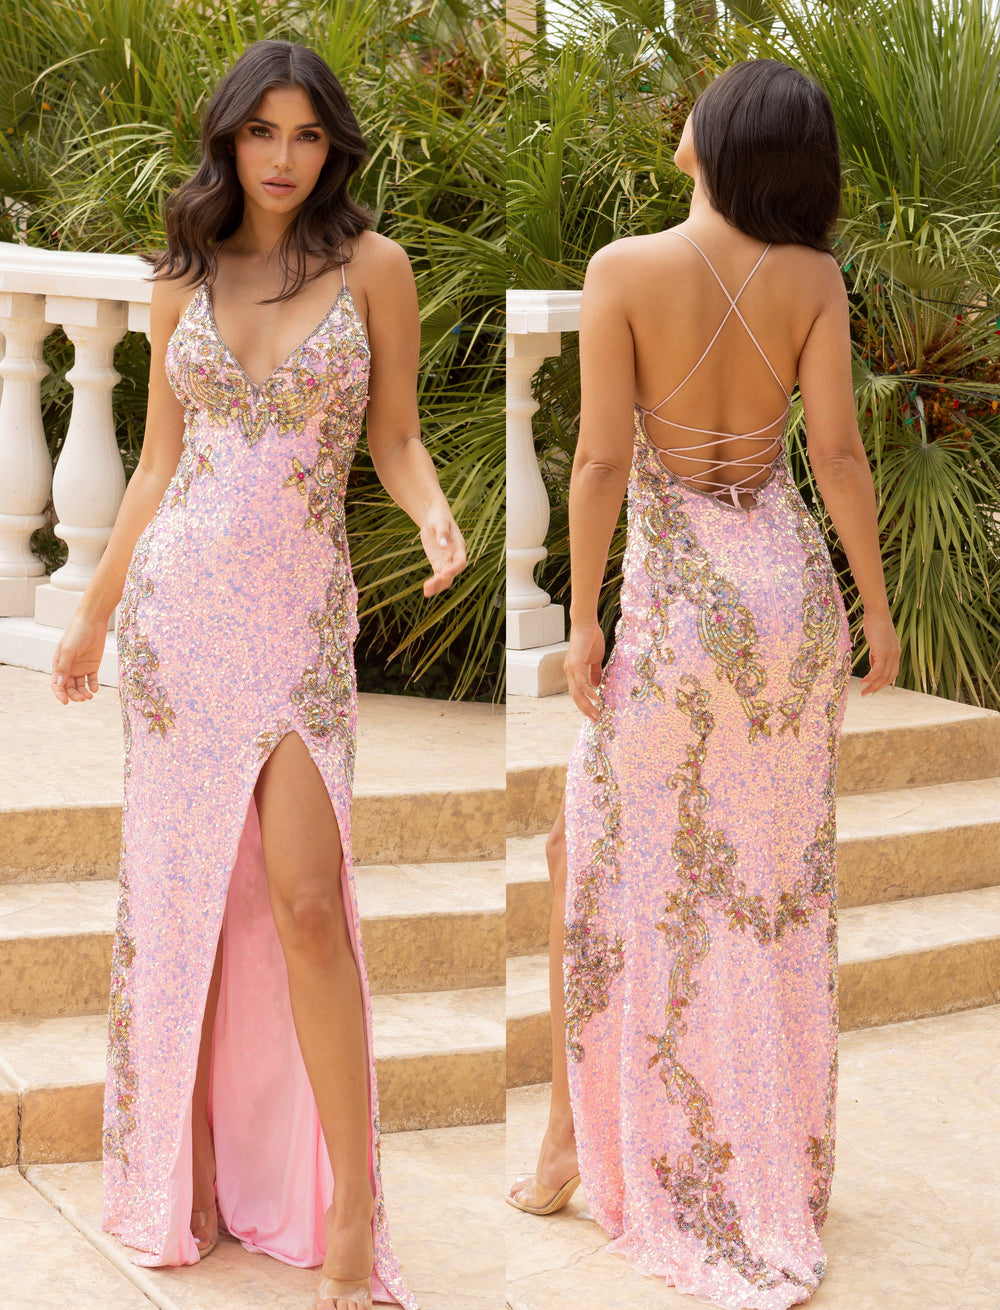 Primavera Couture Prom Dress Primavera Couture 3211 Prom Dress